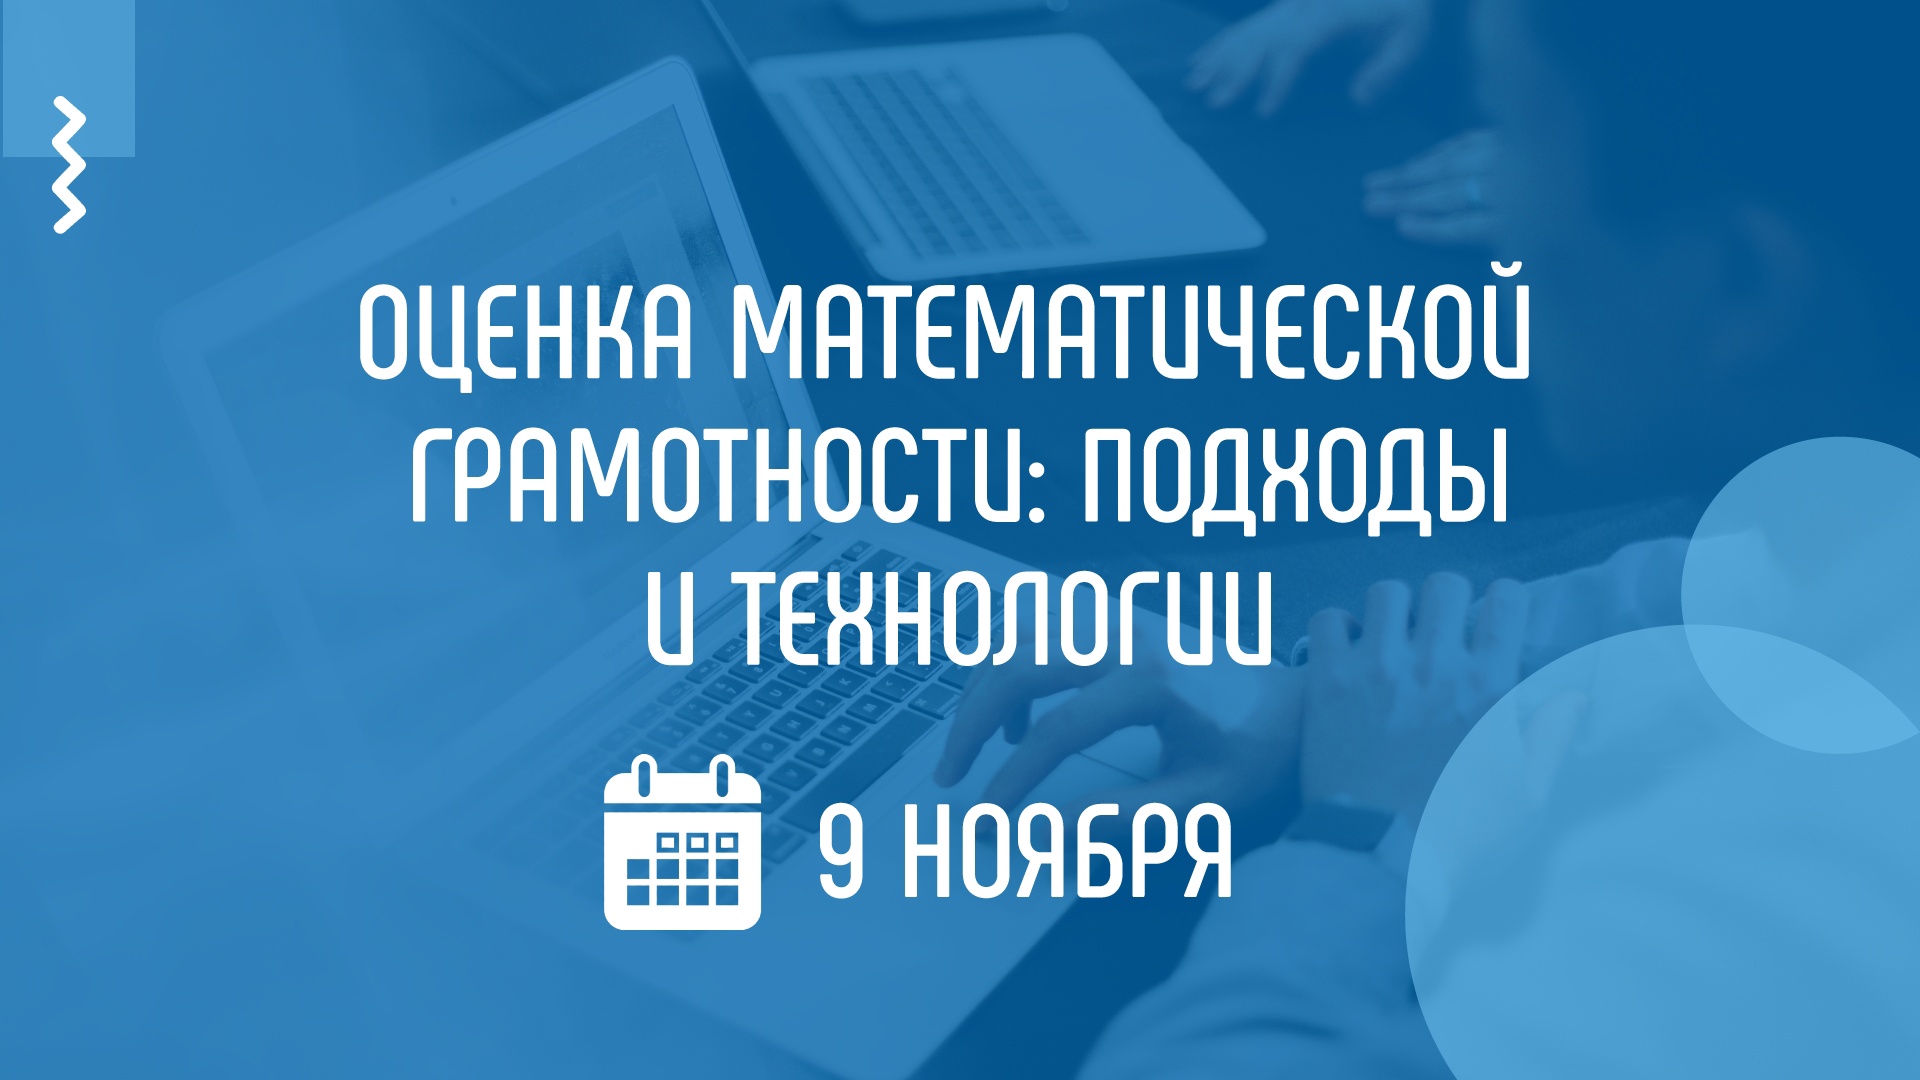 На вебинаре Академии Минпросвещения России расскажут о формирующем оценивании в математическом образовании